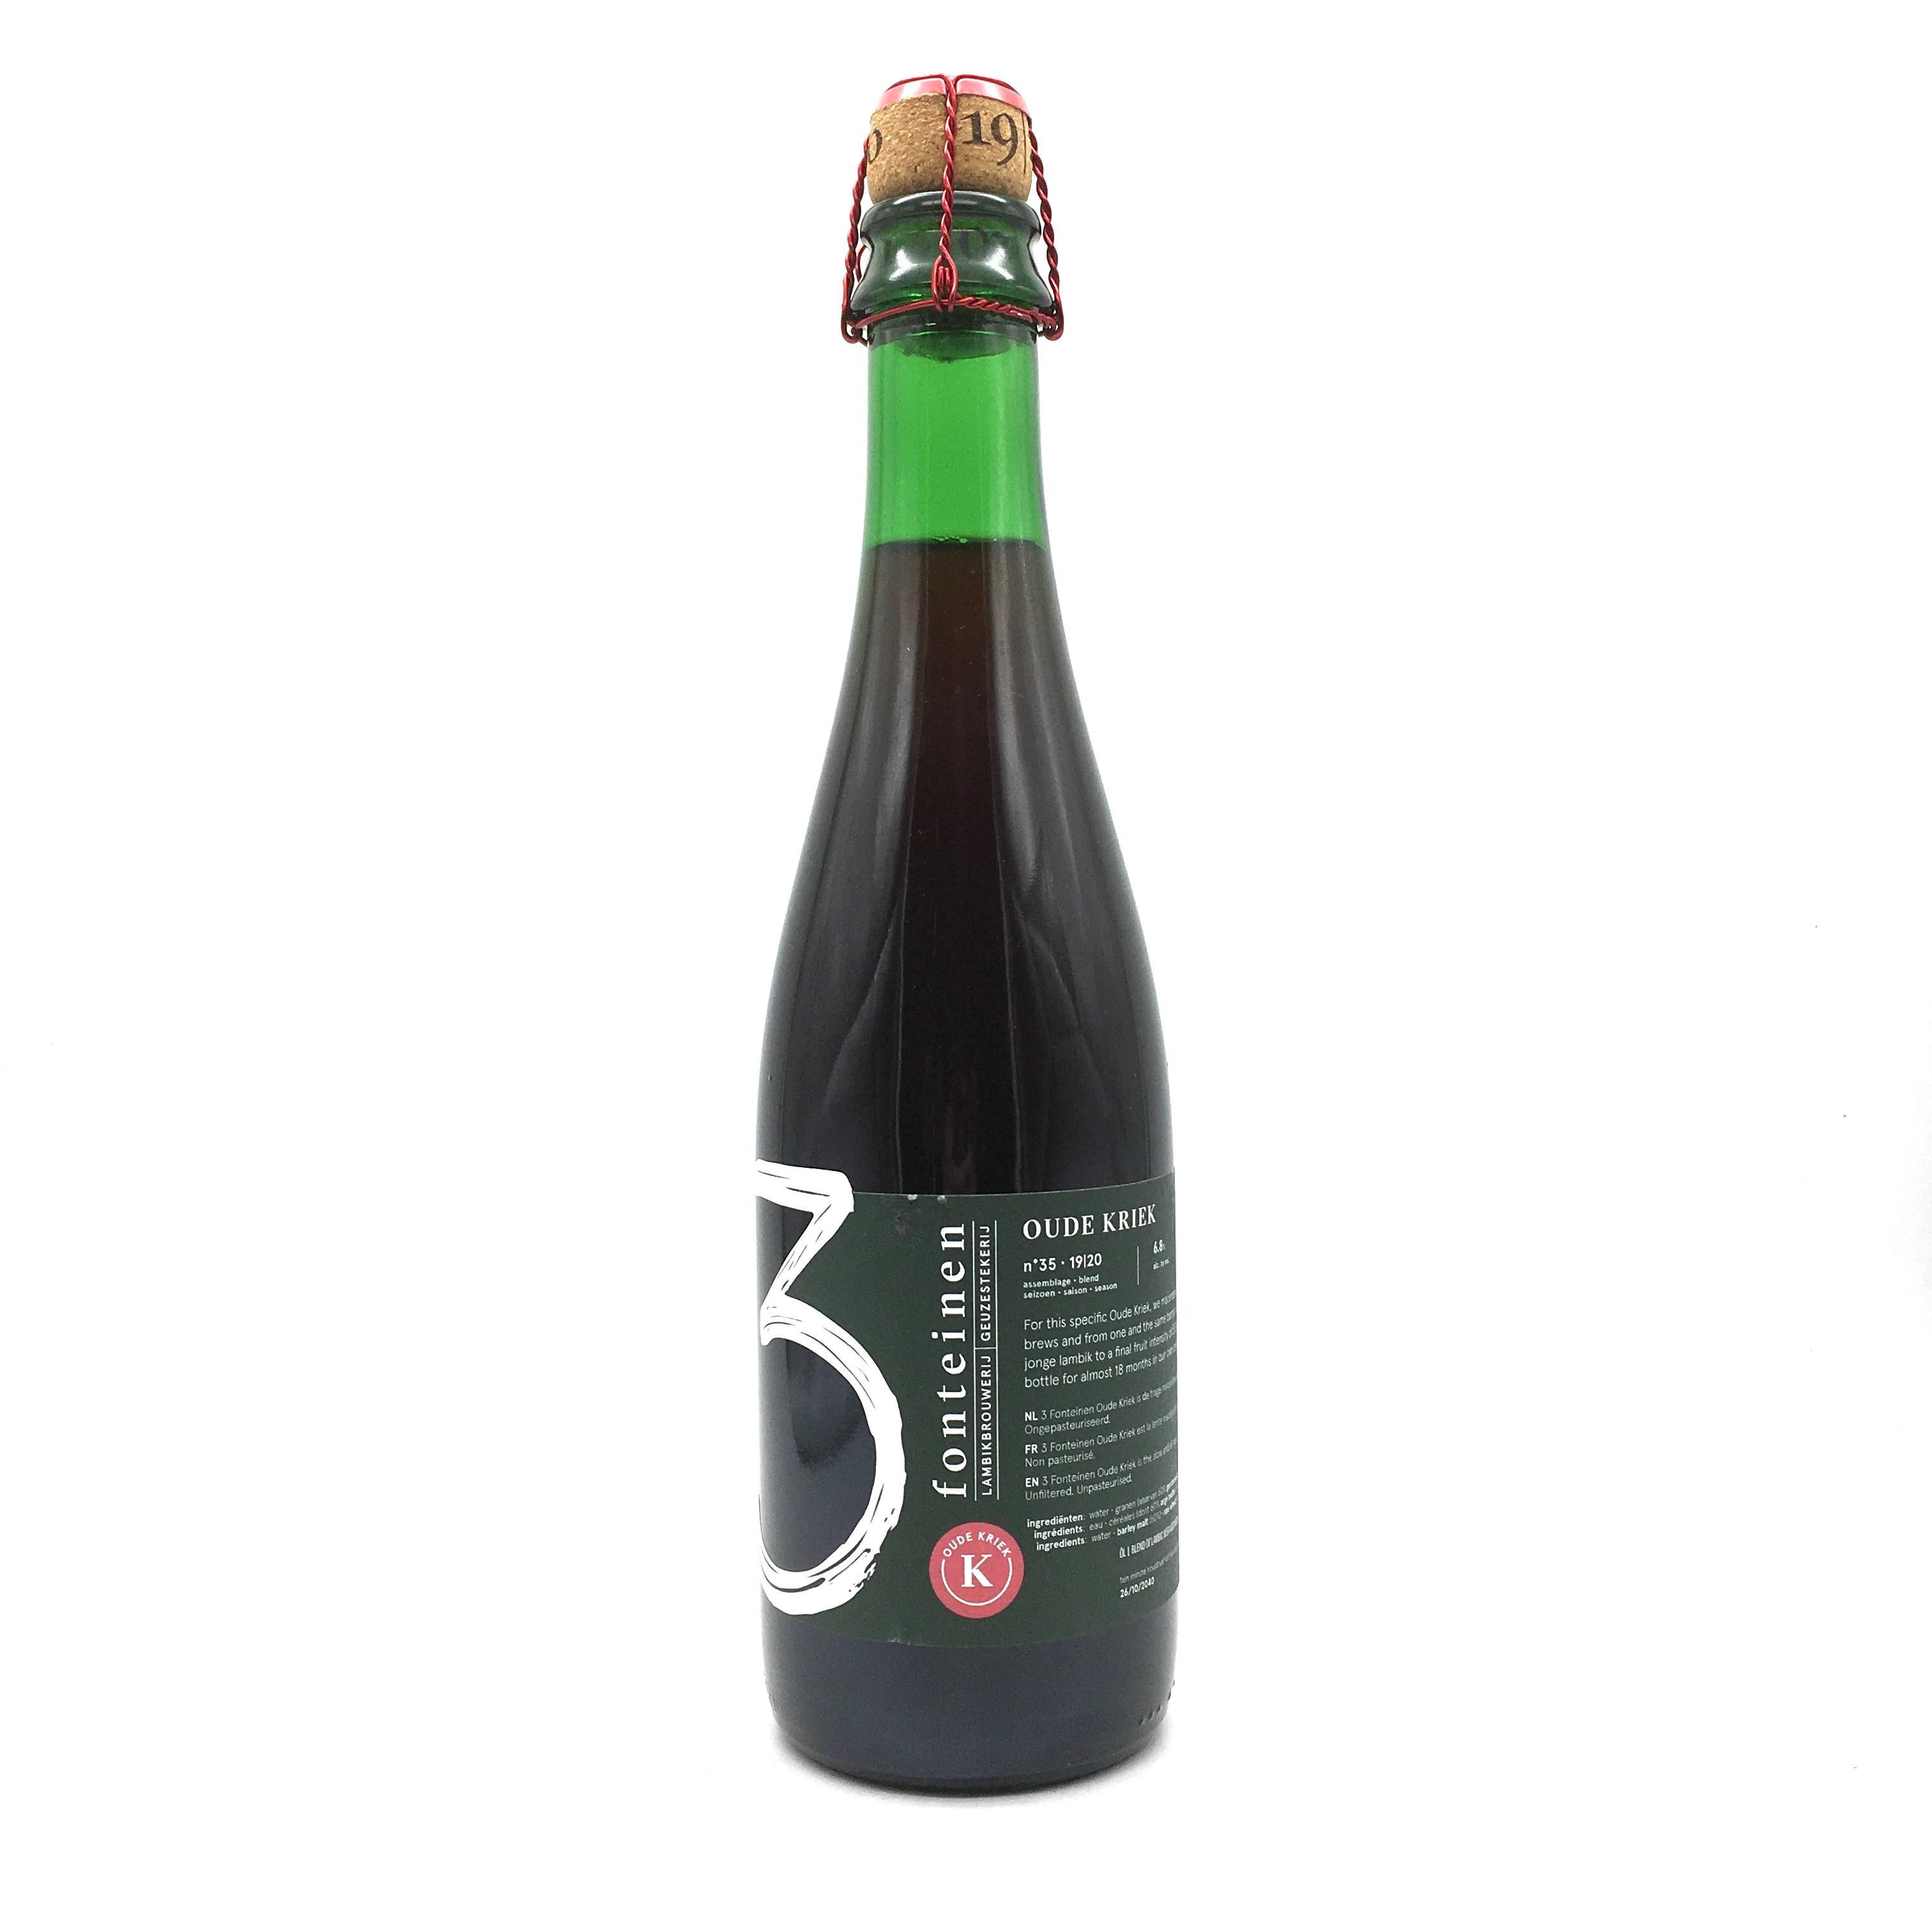 Brouwerij 3 Fonteinen - Oude Kriek (375ml)